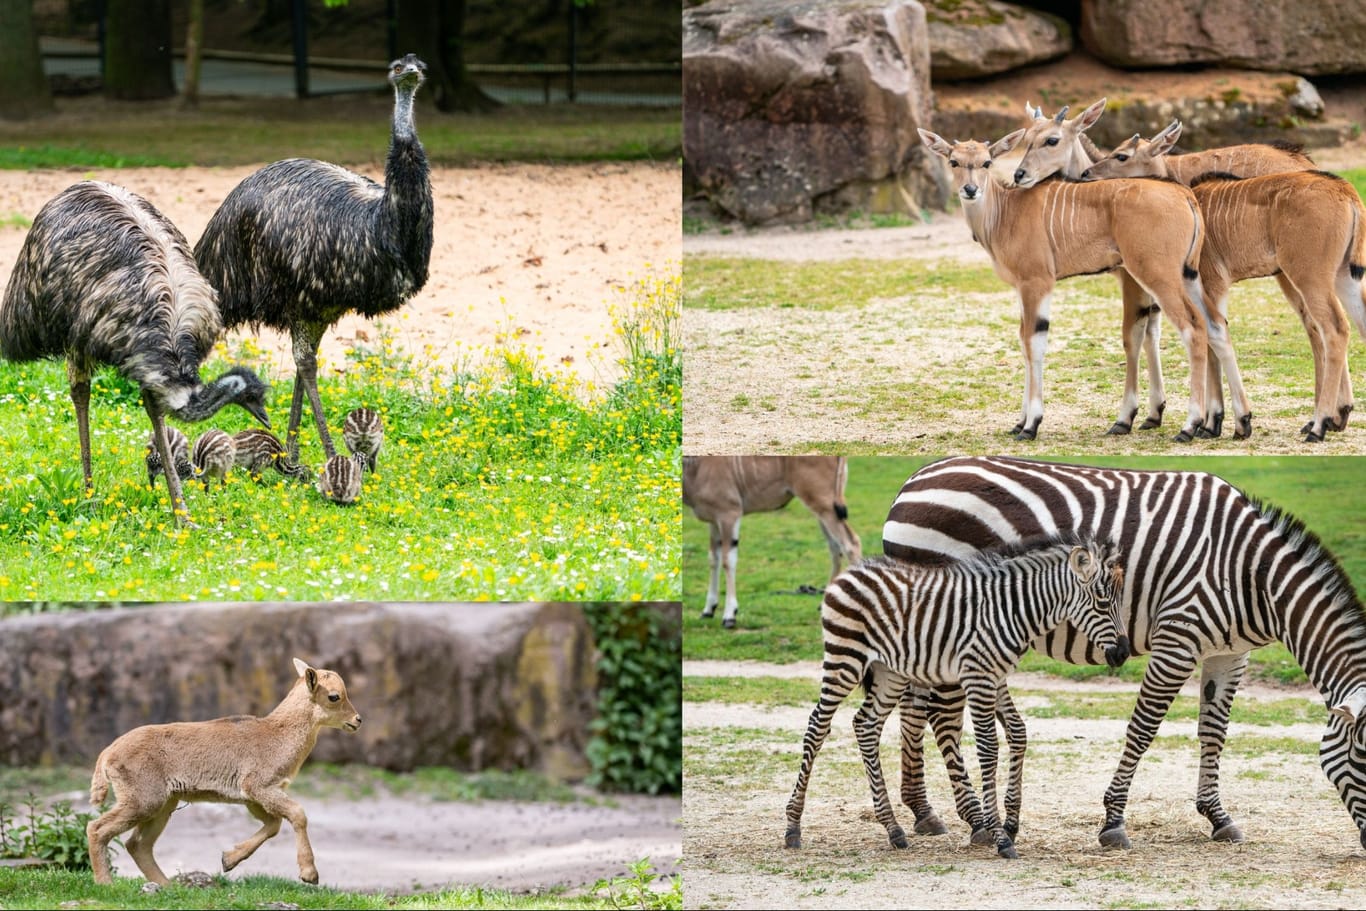 Nachwuchs gibt es sowohl bei den Emus, als auch bei den Zebras, den Antilopen und den Mähnenspringern: Besucher können die Tiere mit etwas Glück schon sehen.